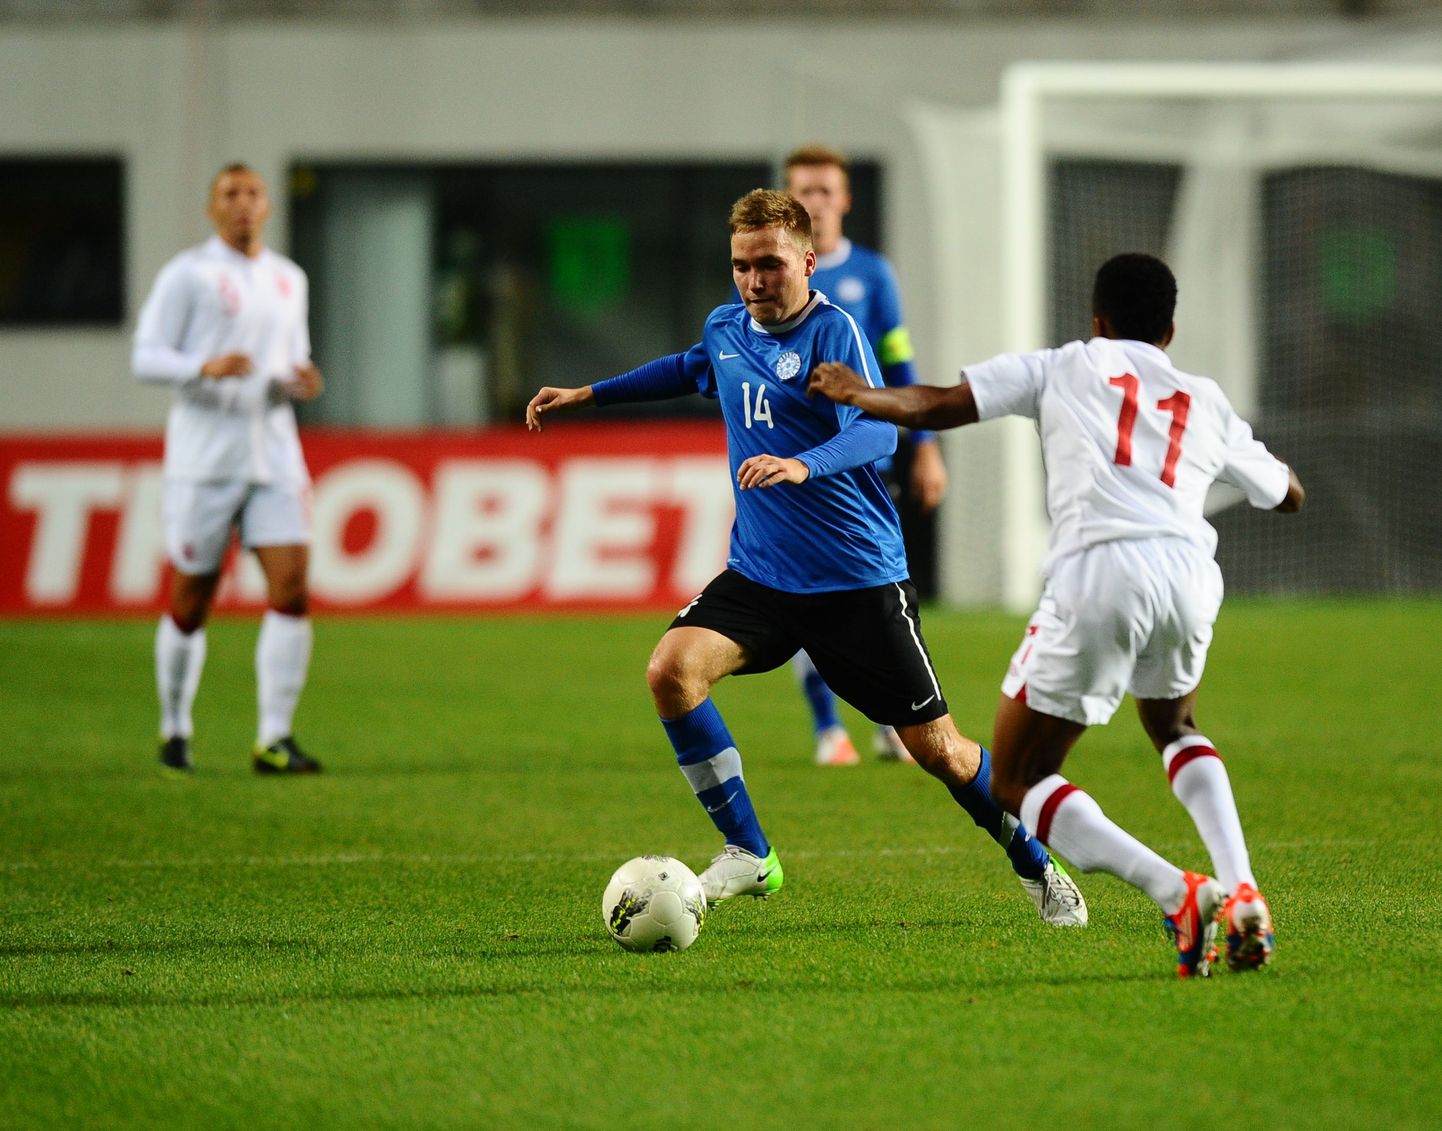 Tauno Tekko Inglismaa noortele (pildil mäng Inglismaaga) väravat ei löönud, kuid kaks tänast tabamust Fääri saarte vastu tõstsid ta Eesti U-19 koondise kangelaseks.